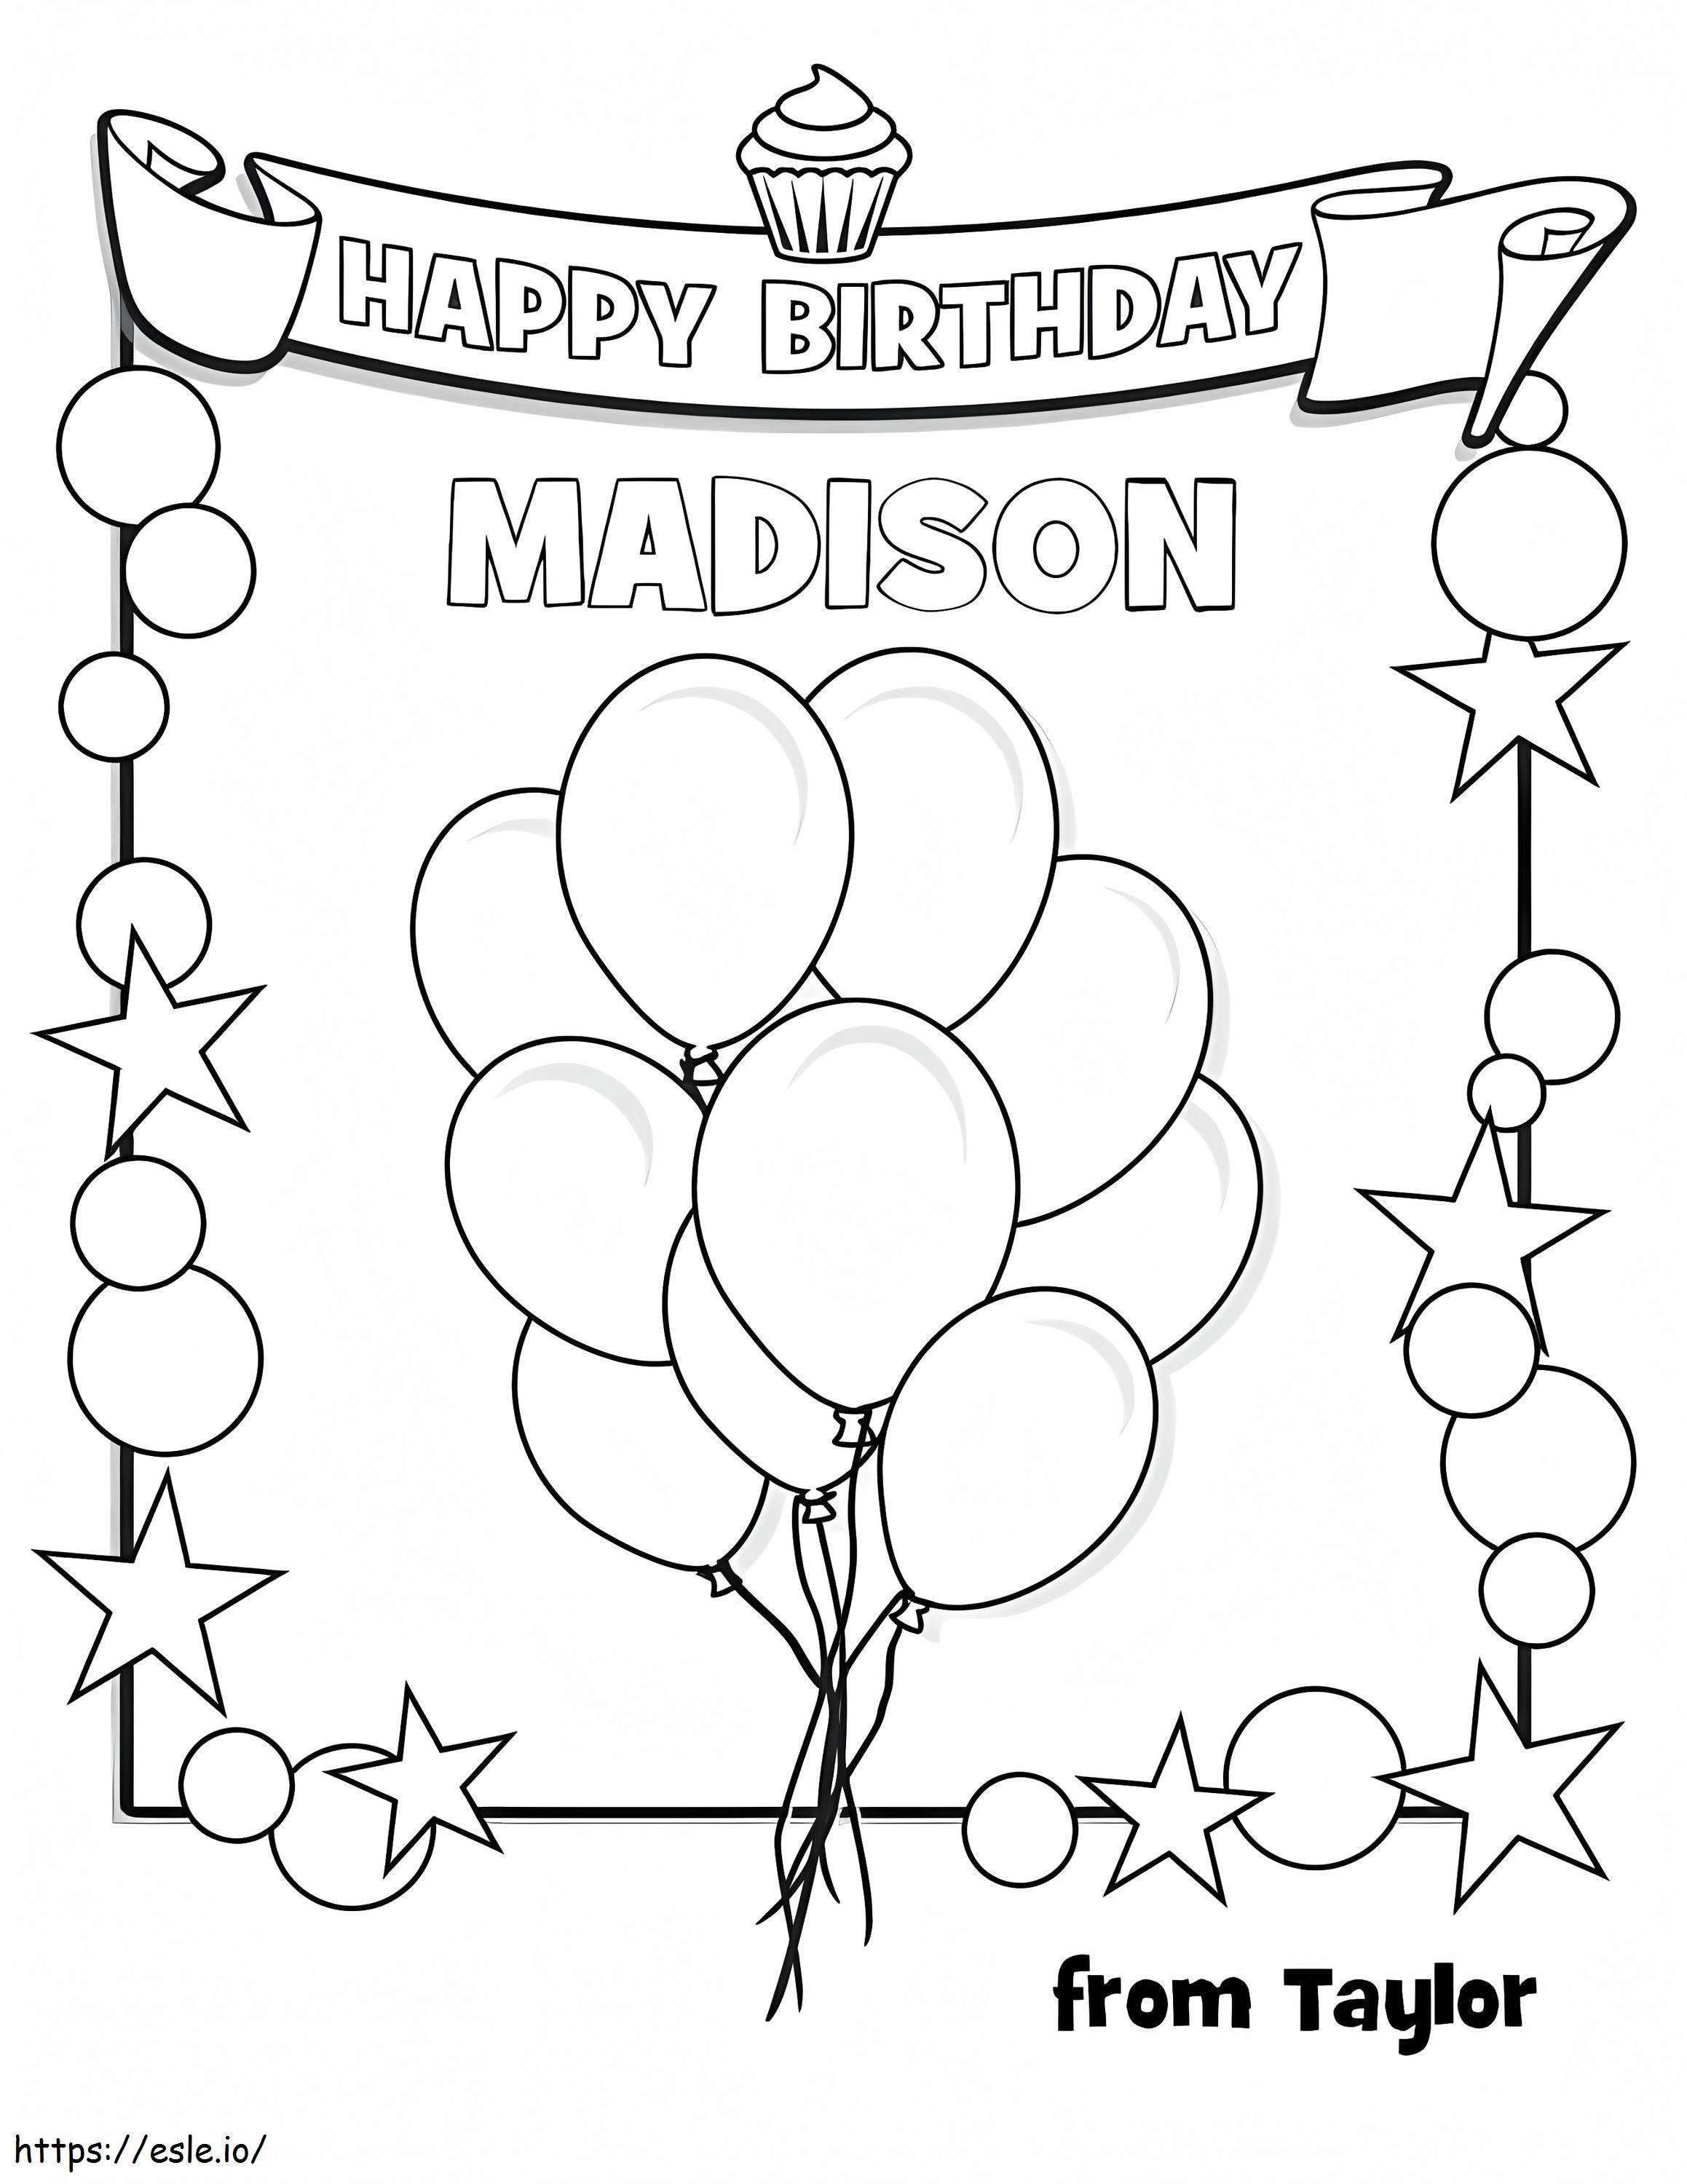 Doğum günün kutlu olsun Madison boyama